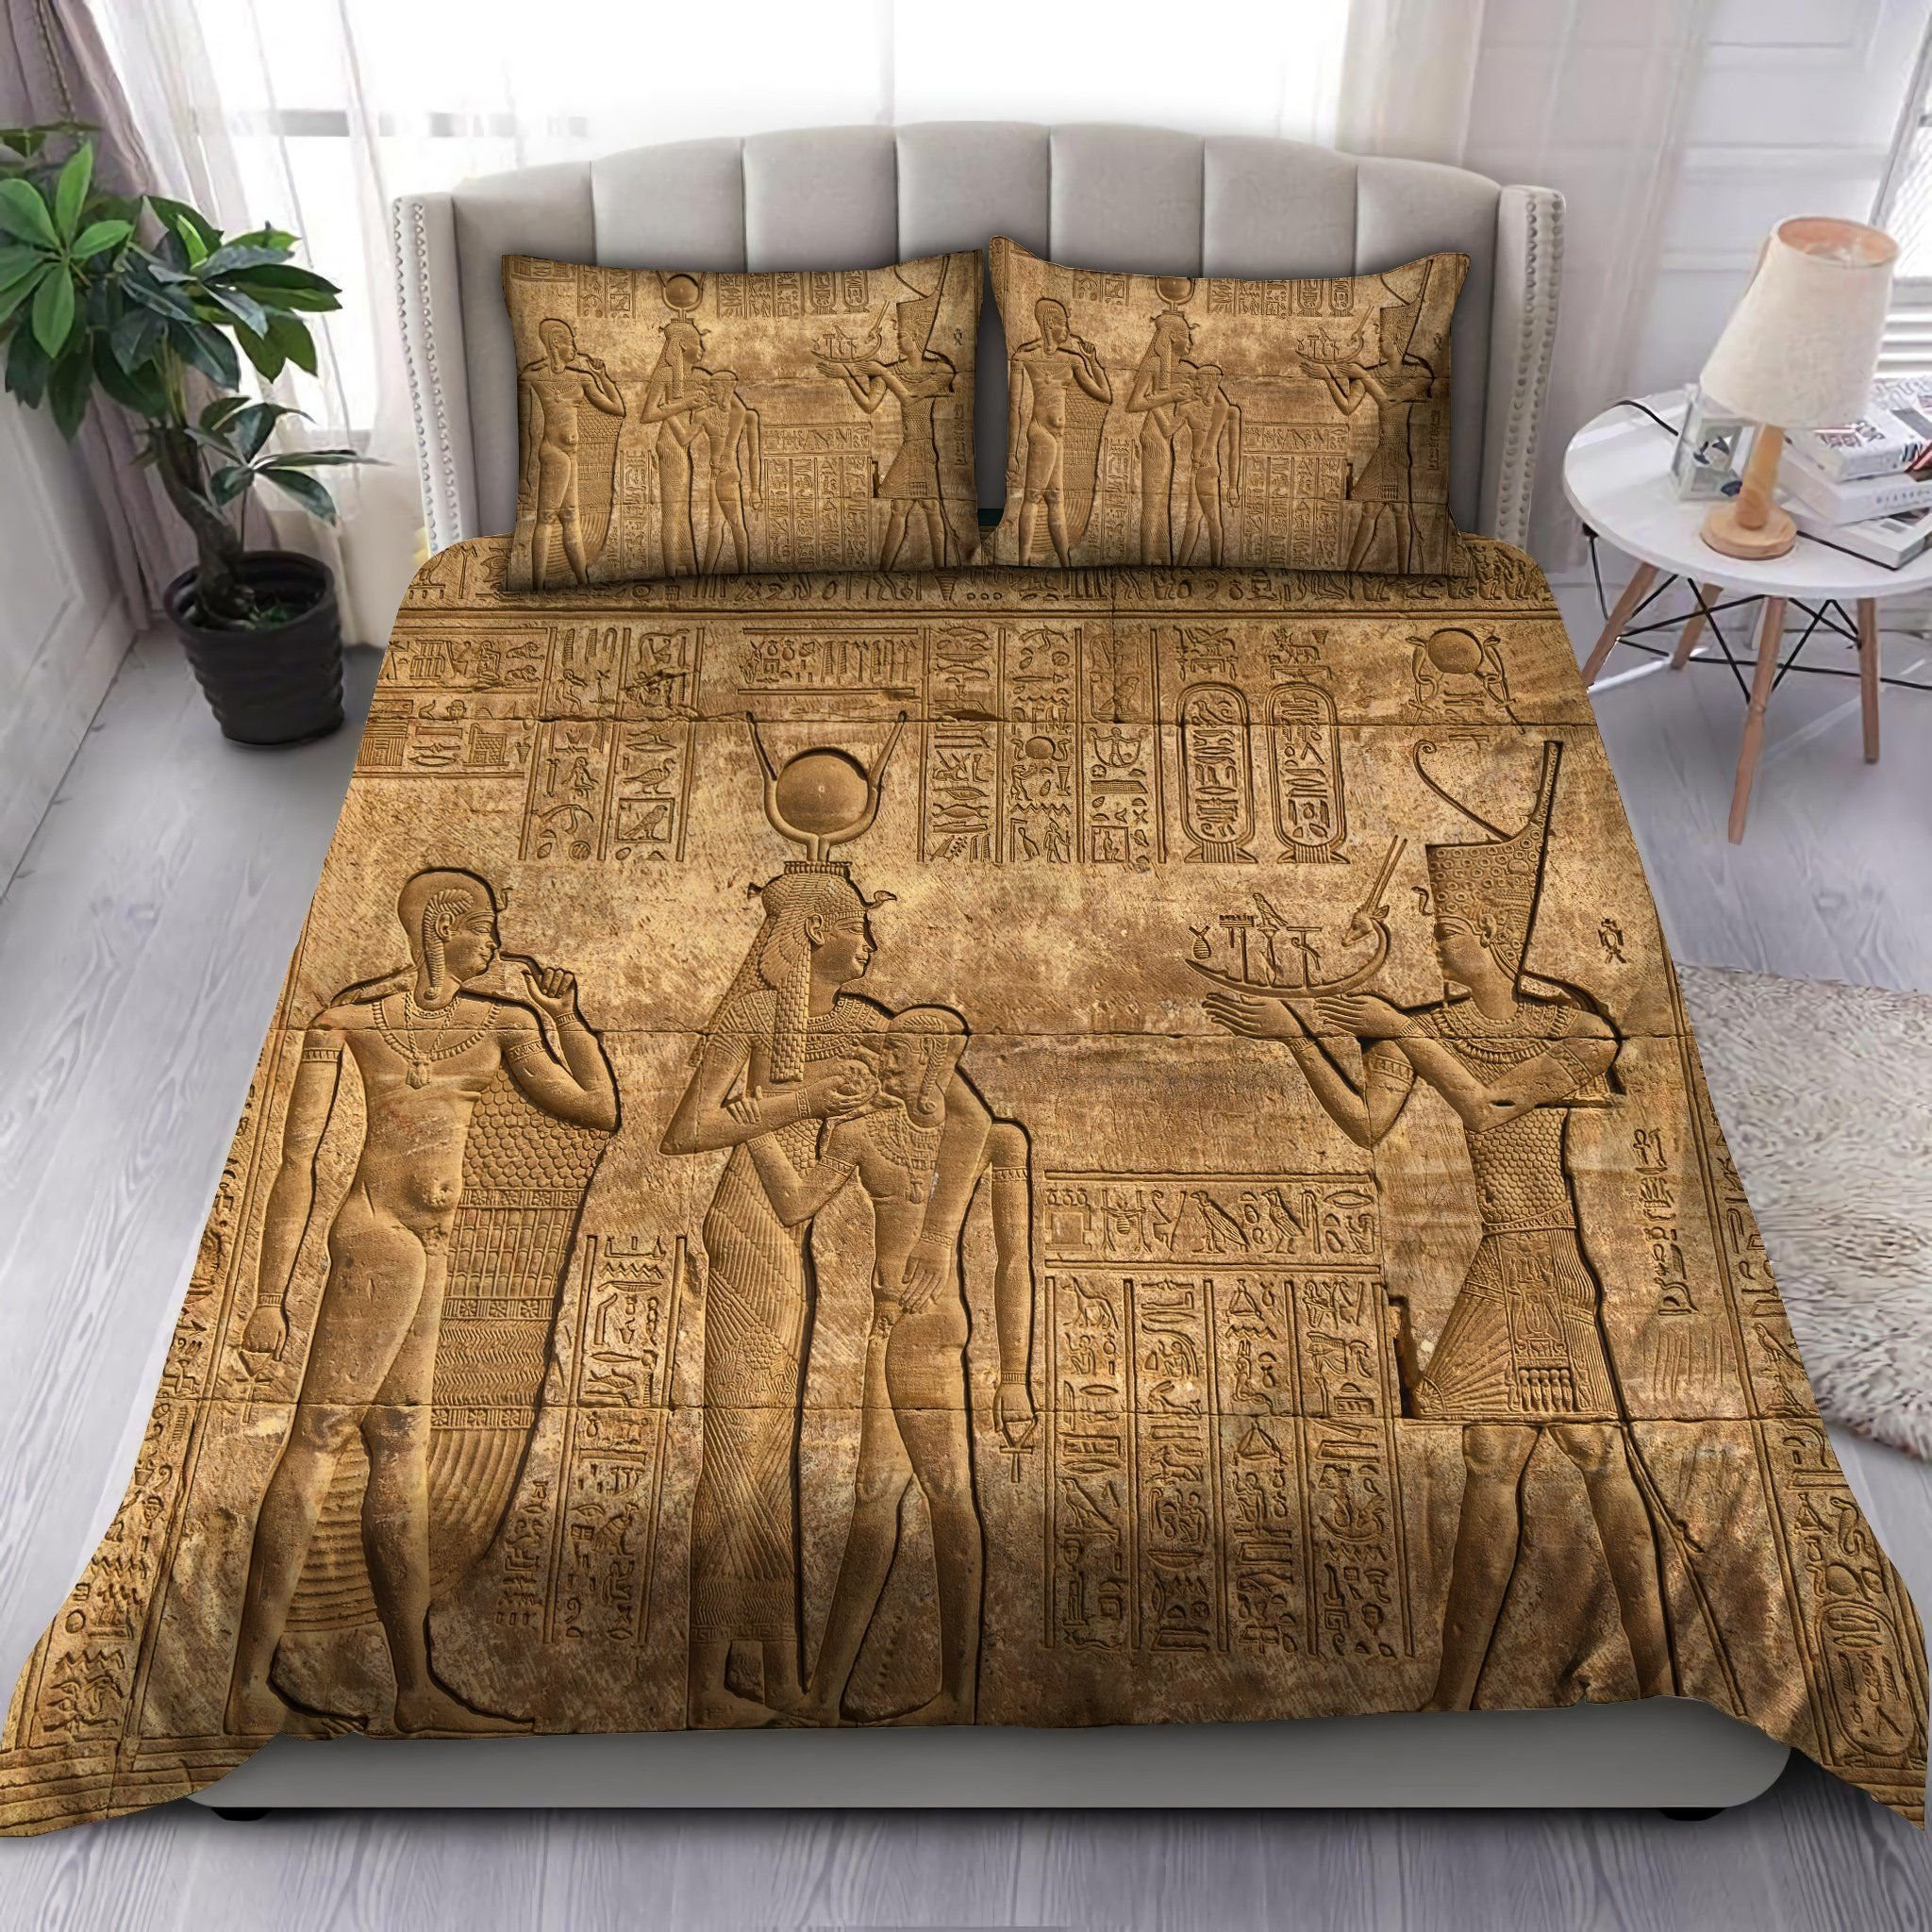 Ancient Egypt Art Bedding Set